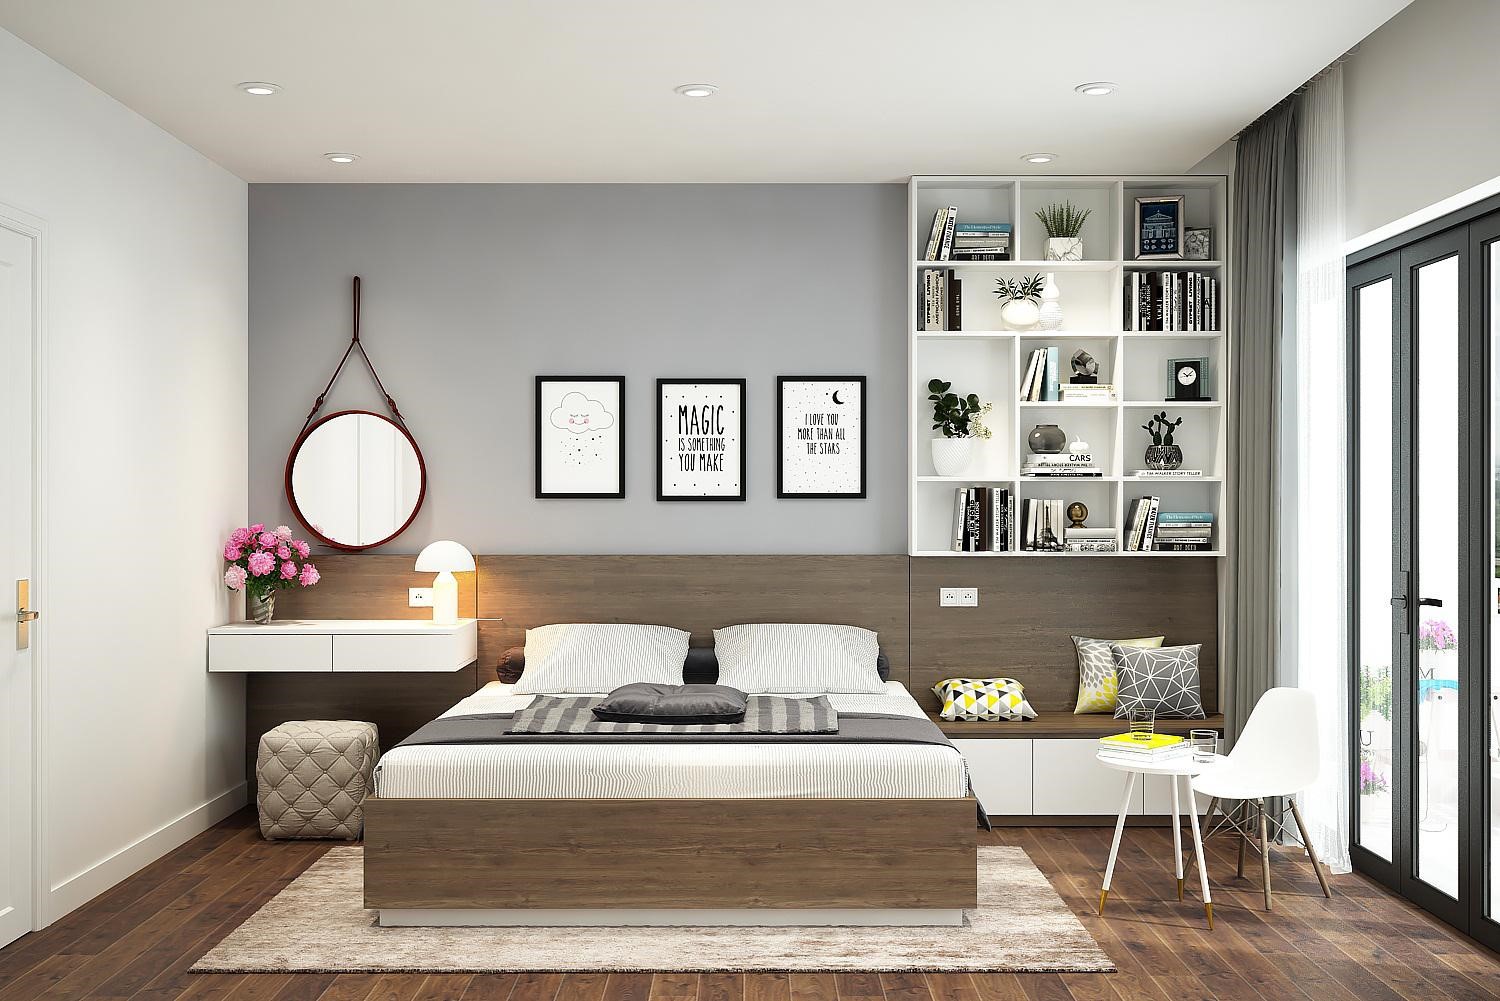 Liệt kê những màu sơn phù hợp cho phòng ngủ hiện đại của bạn